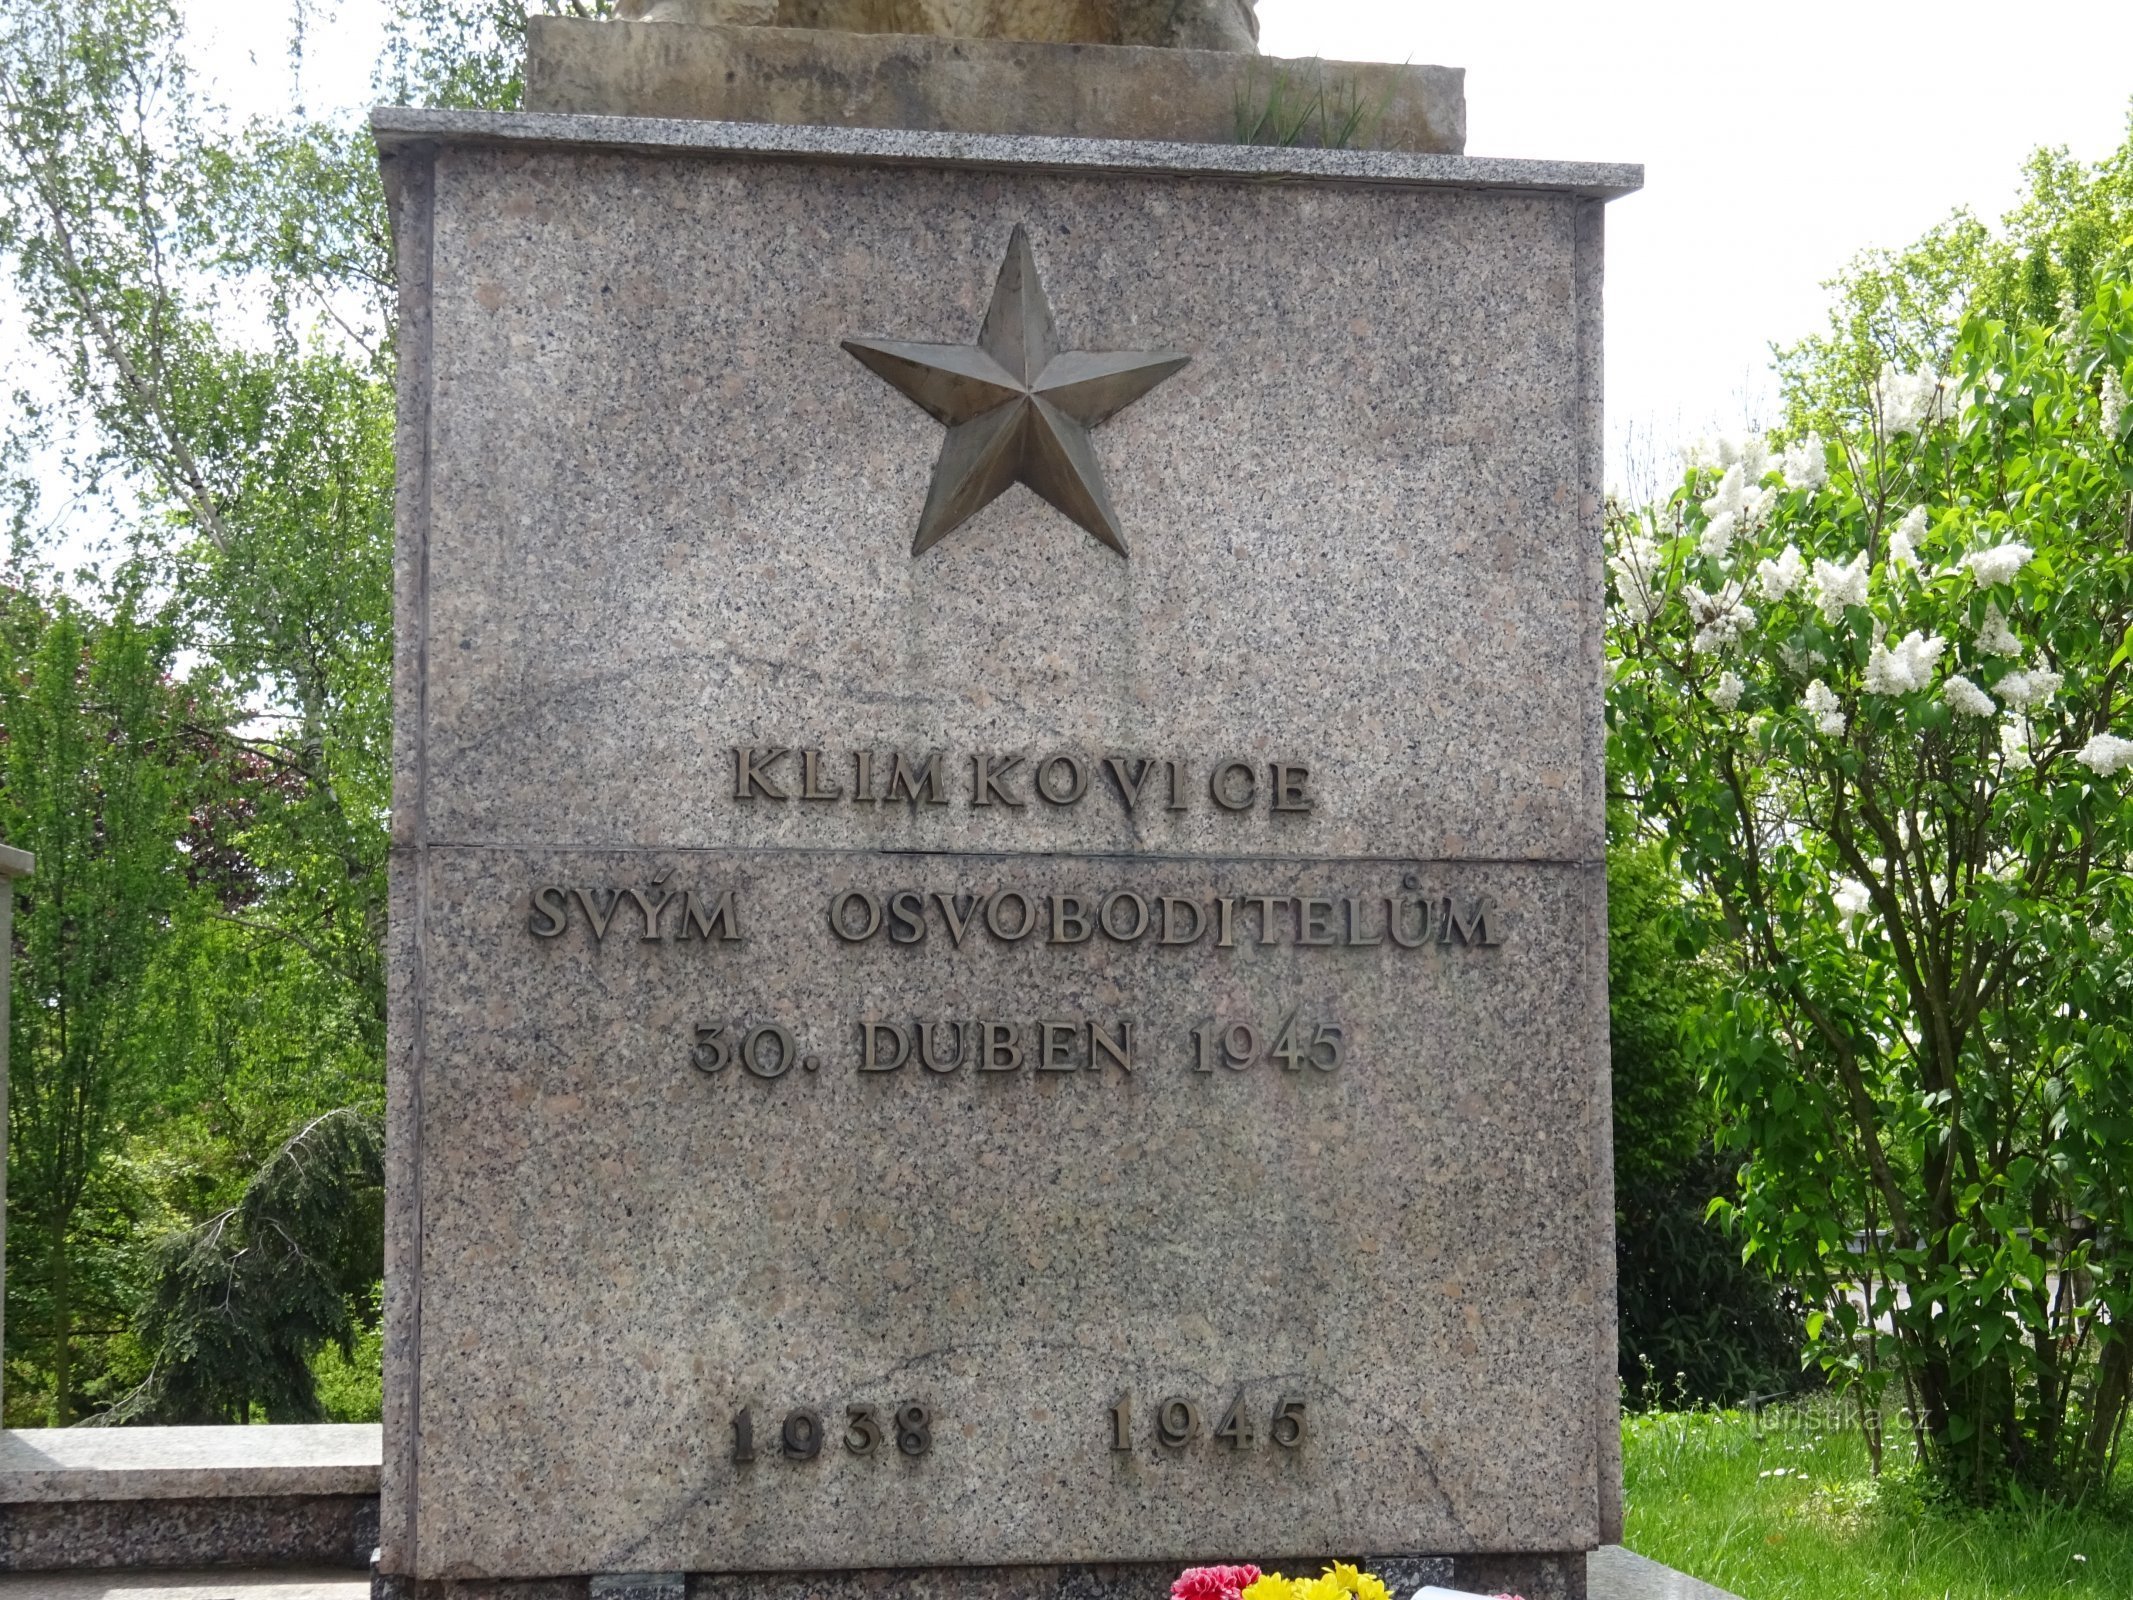 Klimkovice - spomenik II. svetovnih vojn